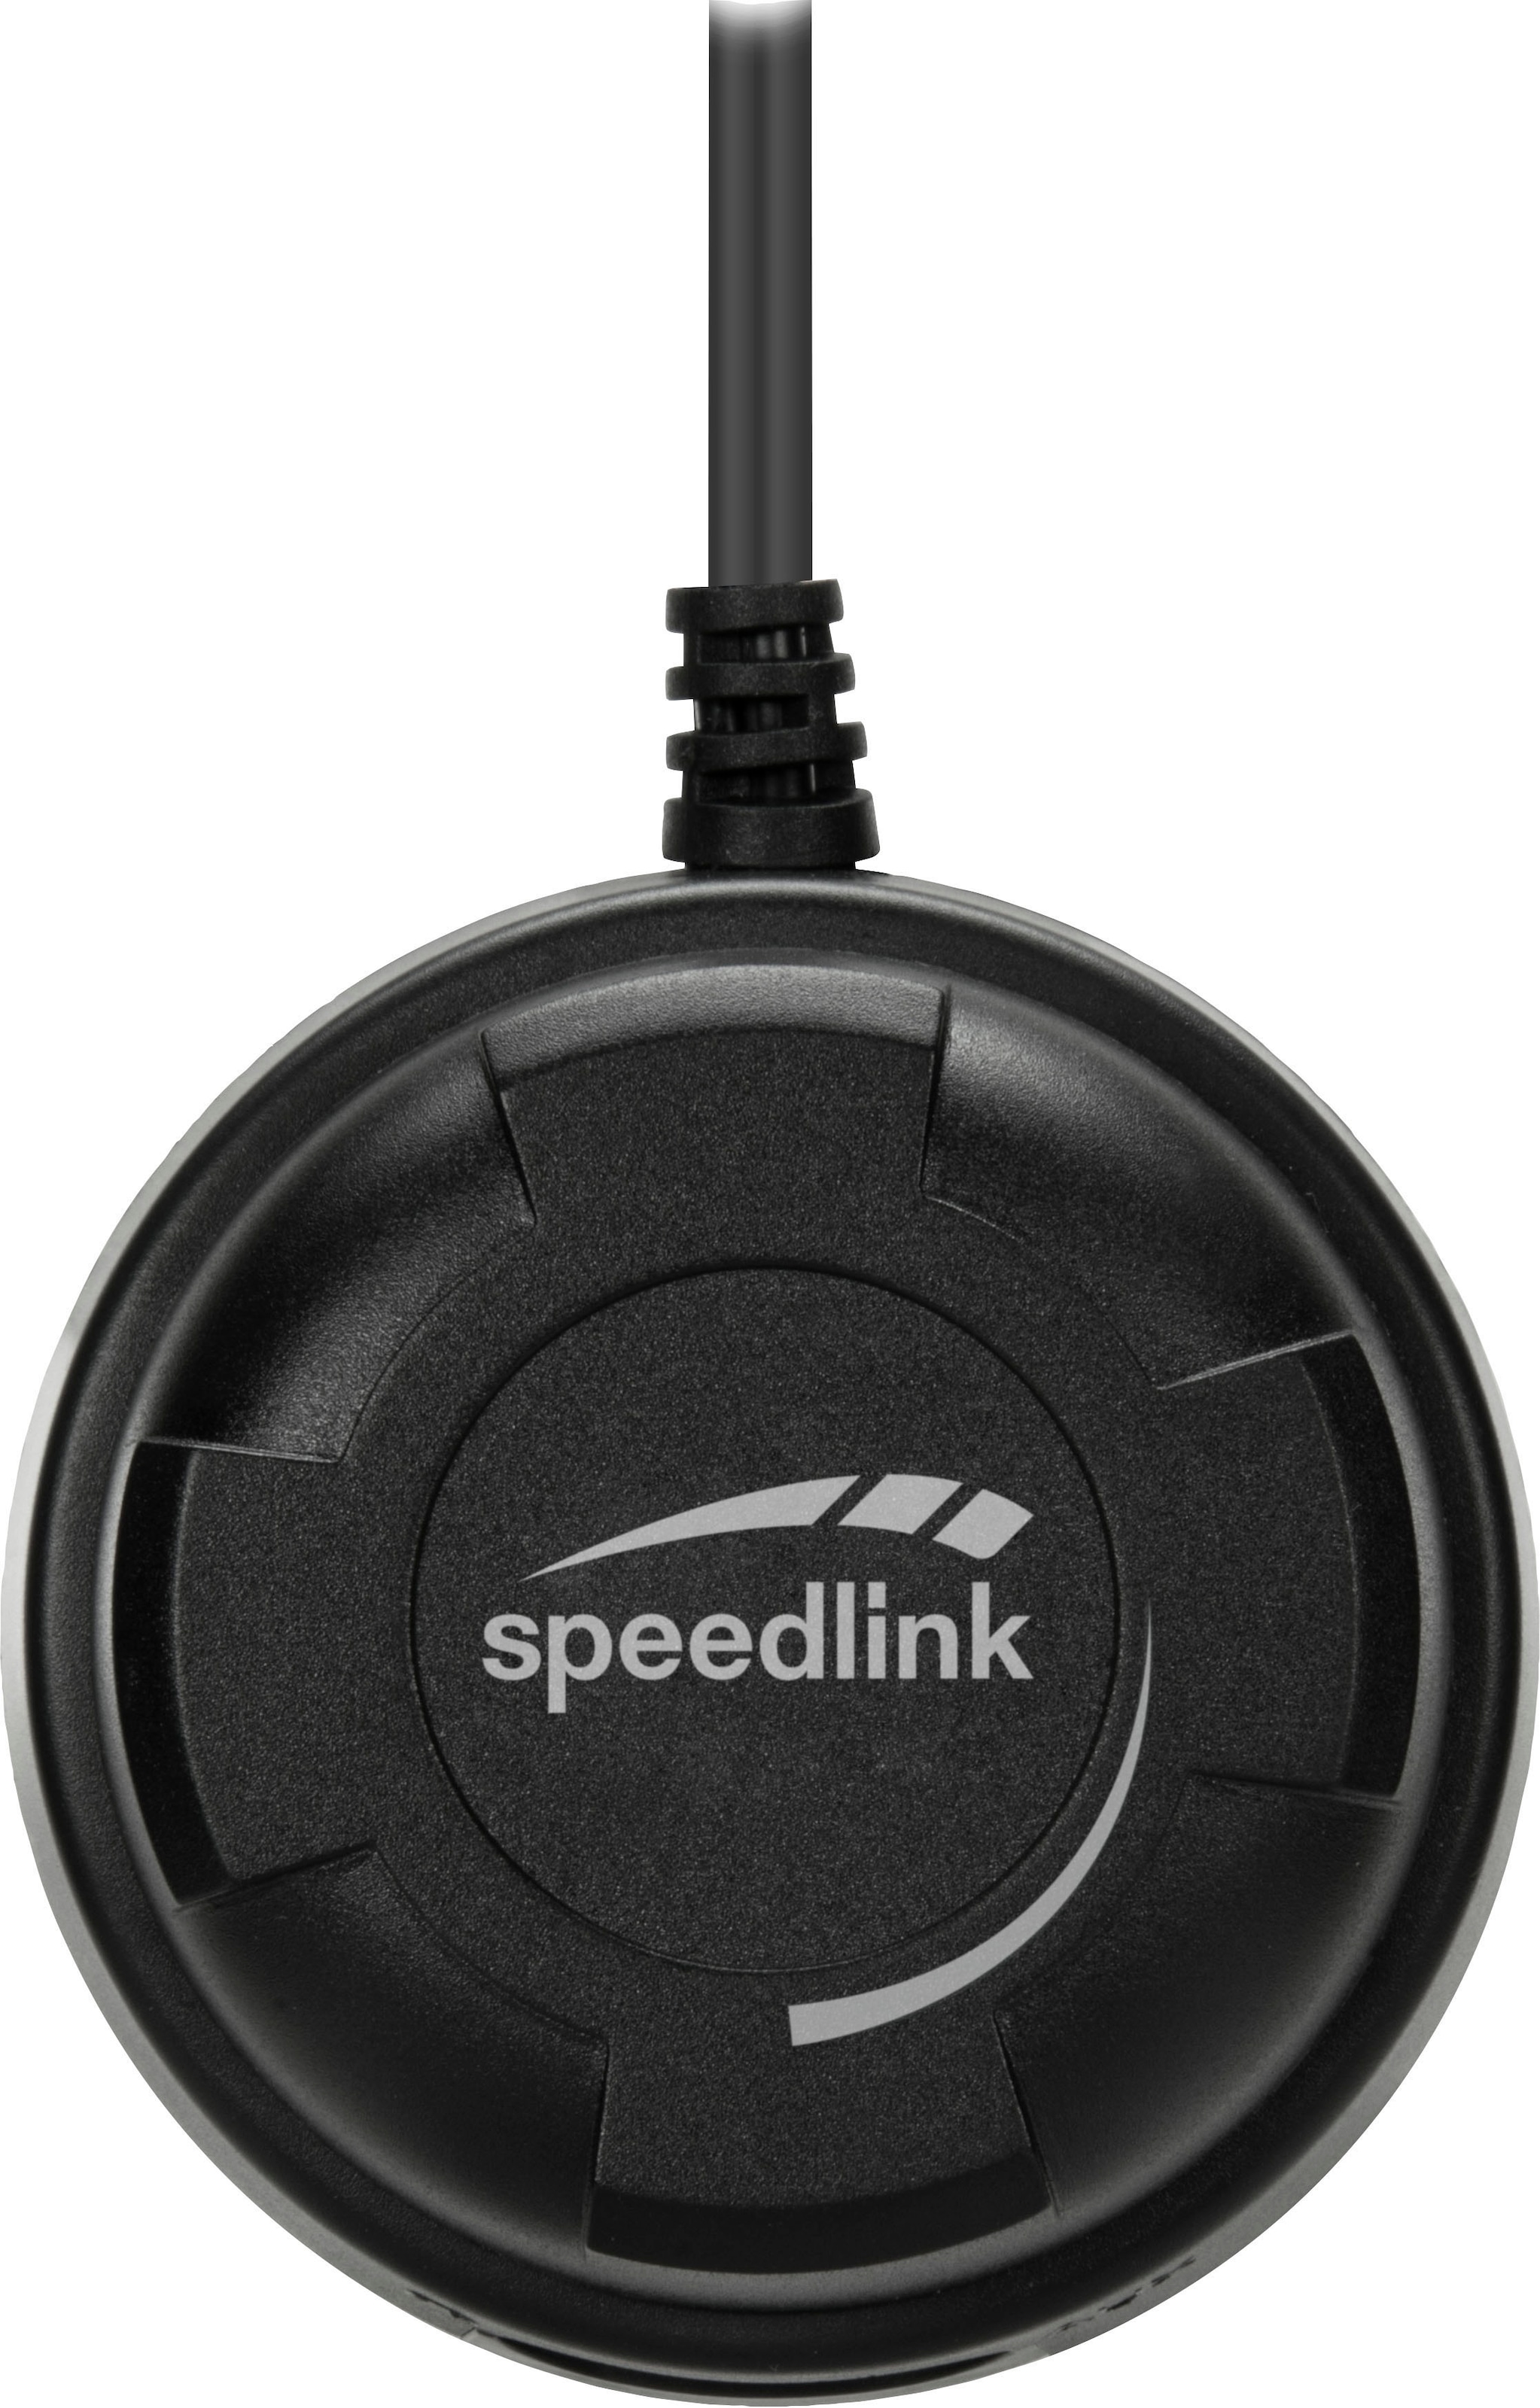 Speedlink PC-Lautsprecher »GRAVITY CARBON RGB 2.1«